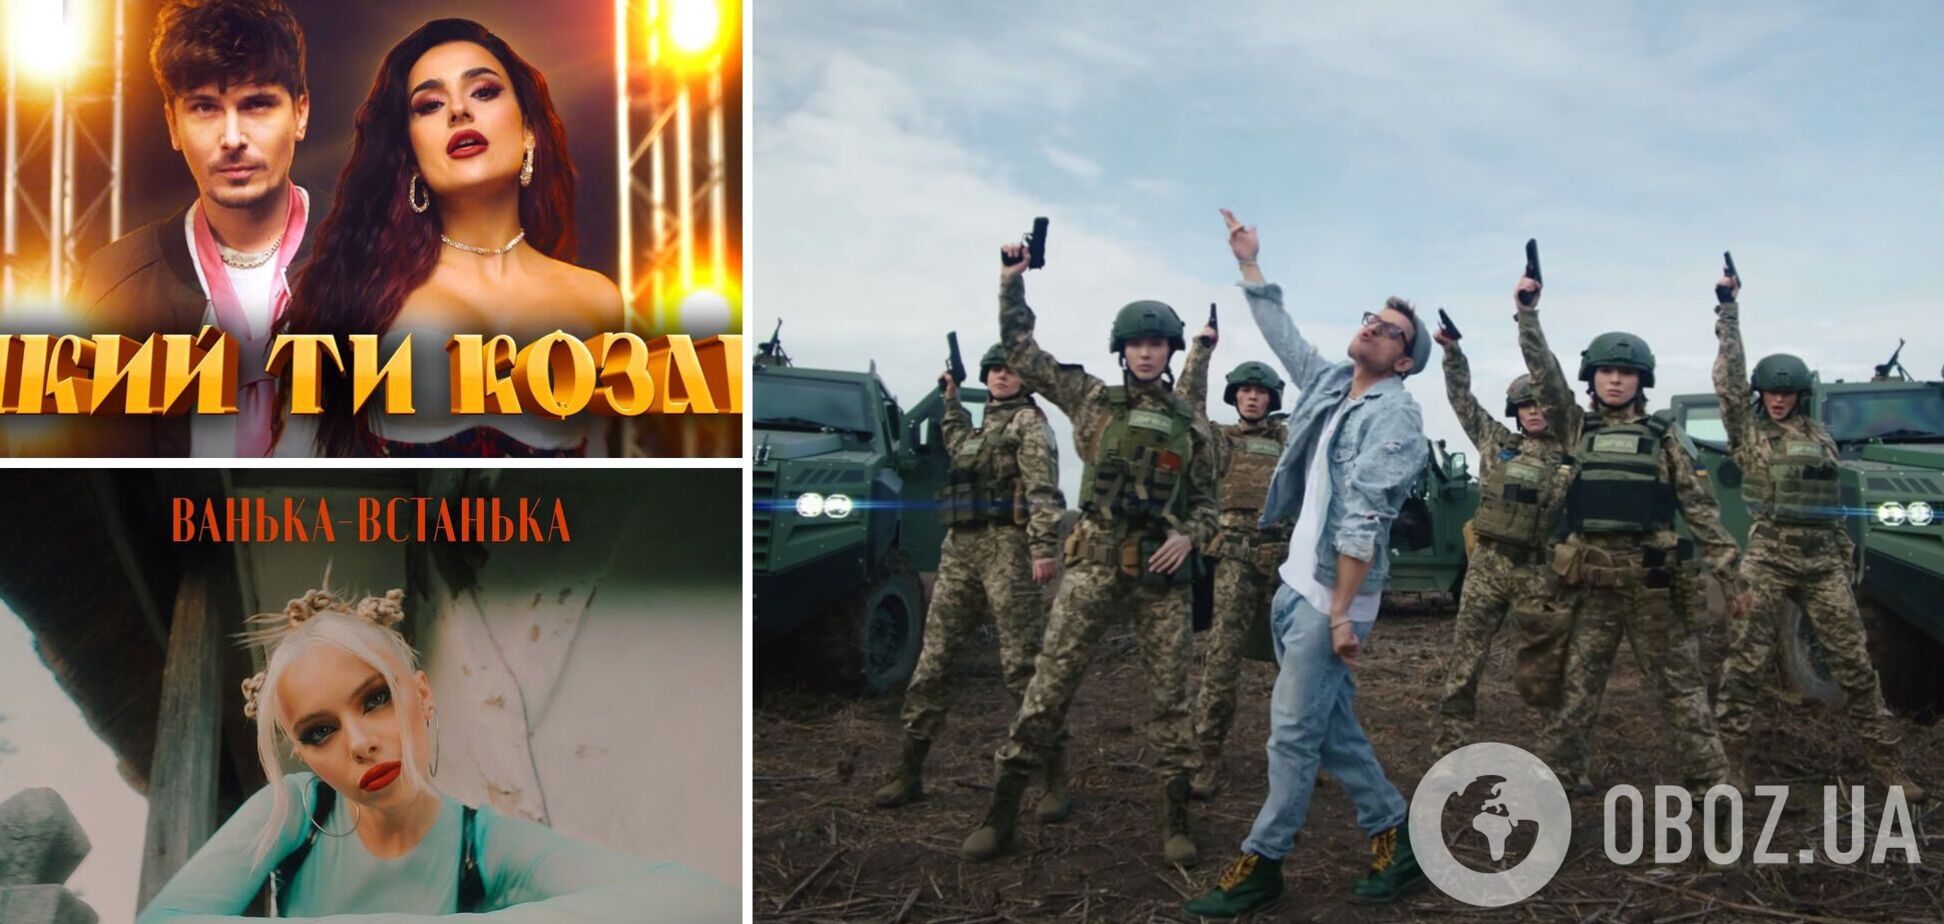 'Дика дичка', 'Гопак', Ванька-встанька' и прочая шароварщина: подборка треков, которые вдребезги раскритиковали украинцы